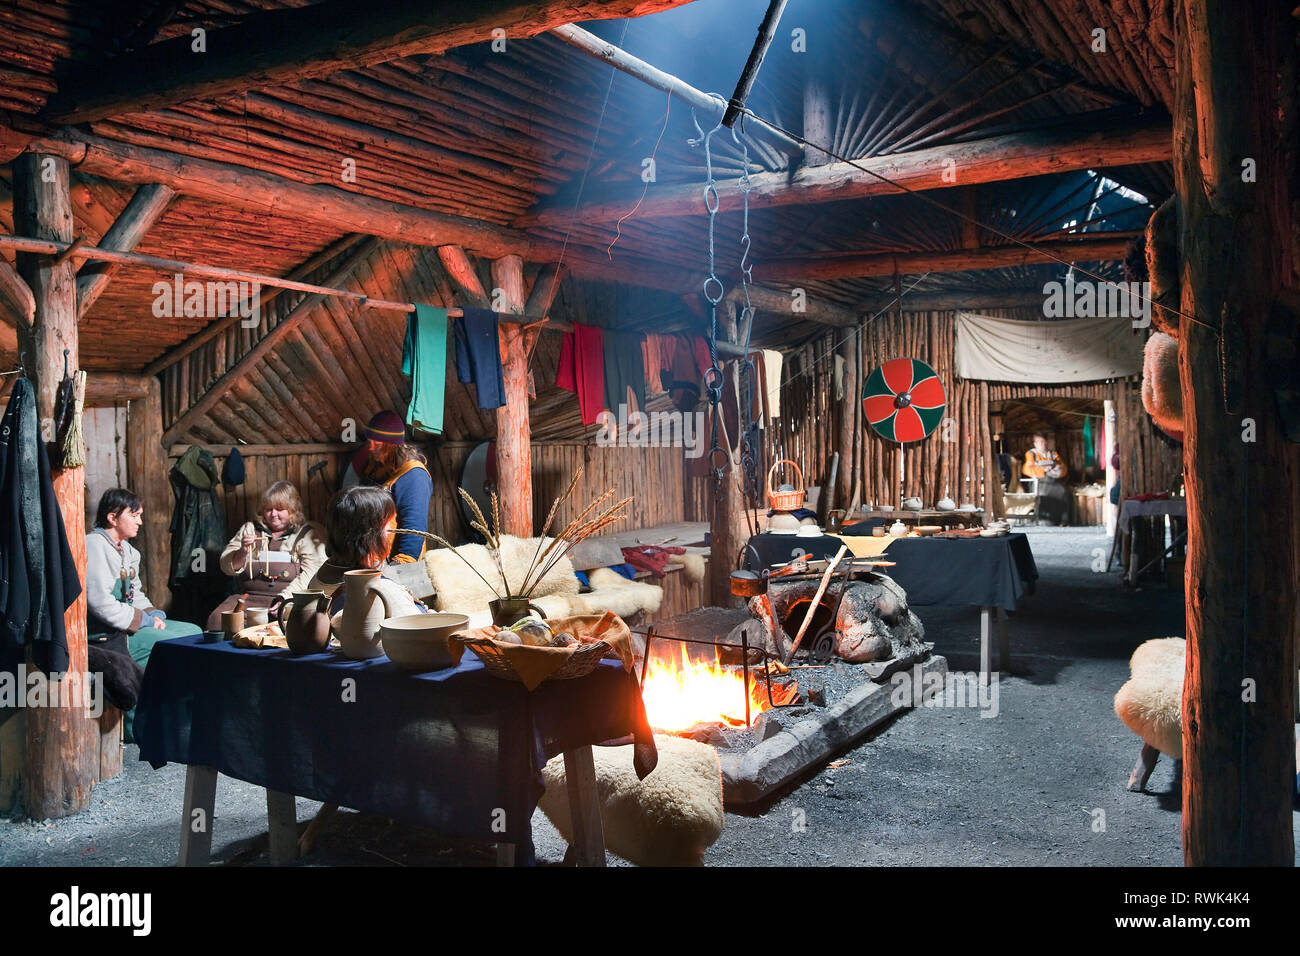 Reenactors en costumes d'effectuer des tâches traditionnelles à l'intérieur d'une maison longue Viking recréé à Norstead Village Viking et le port de commerce, DE L'Anse aux Meadows, Terre-Neuve, Canada Banque D'Images